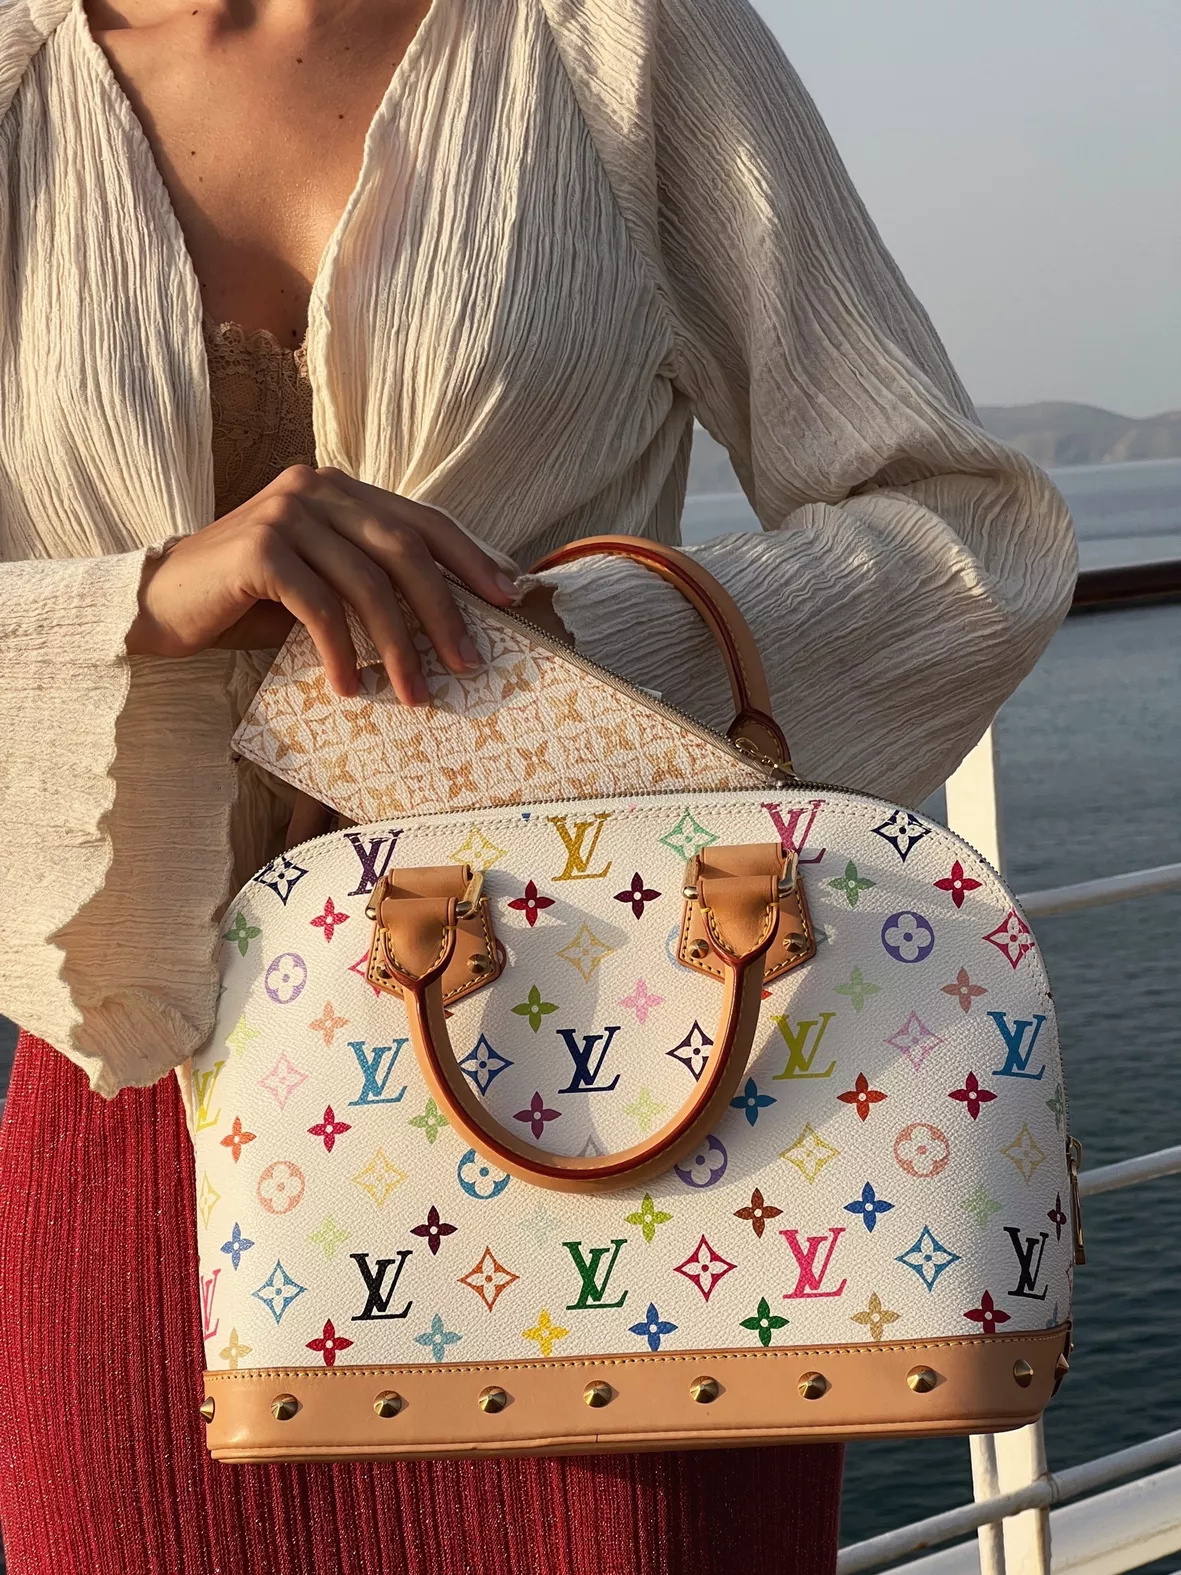 Alma Louis Vuitton Handbags for Women - Vestiaire Collective